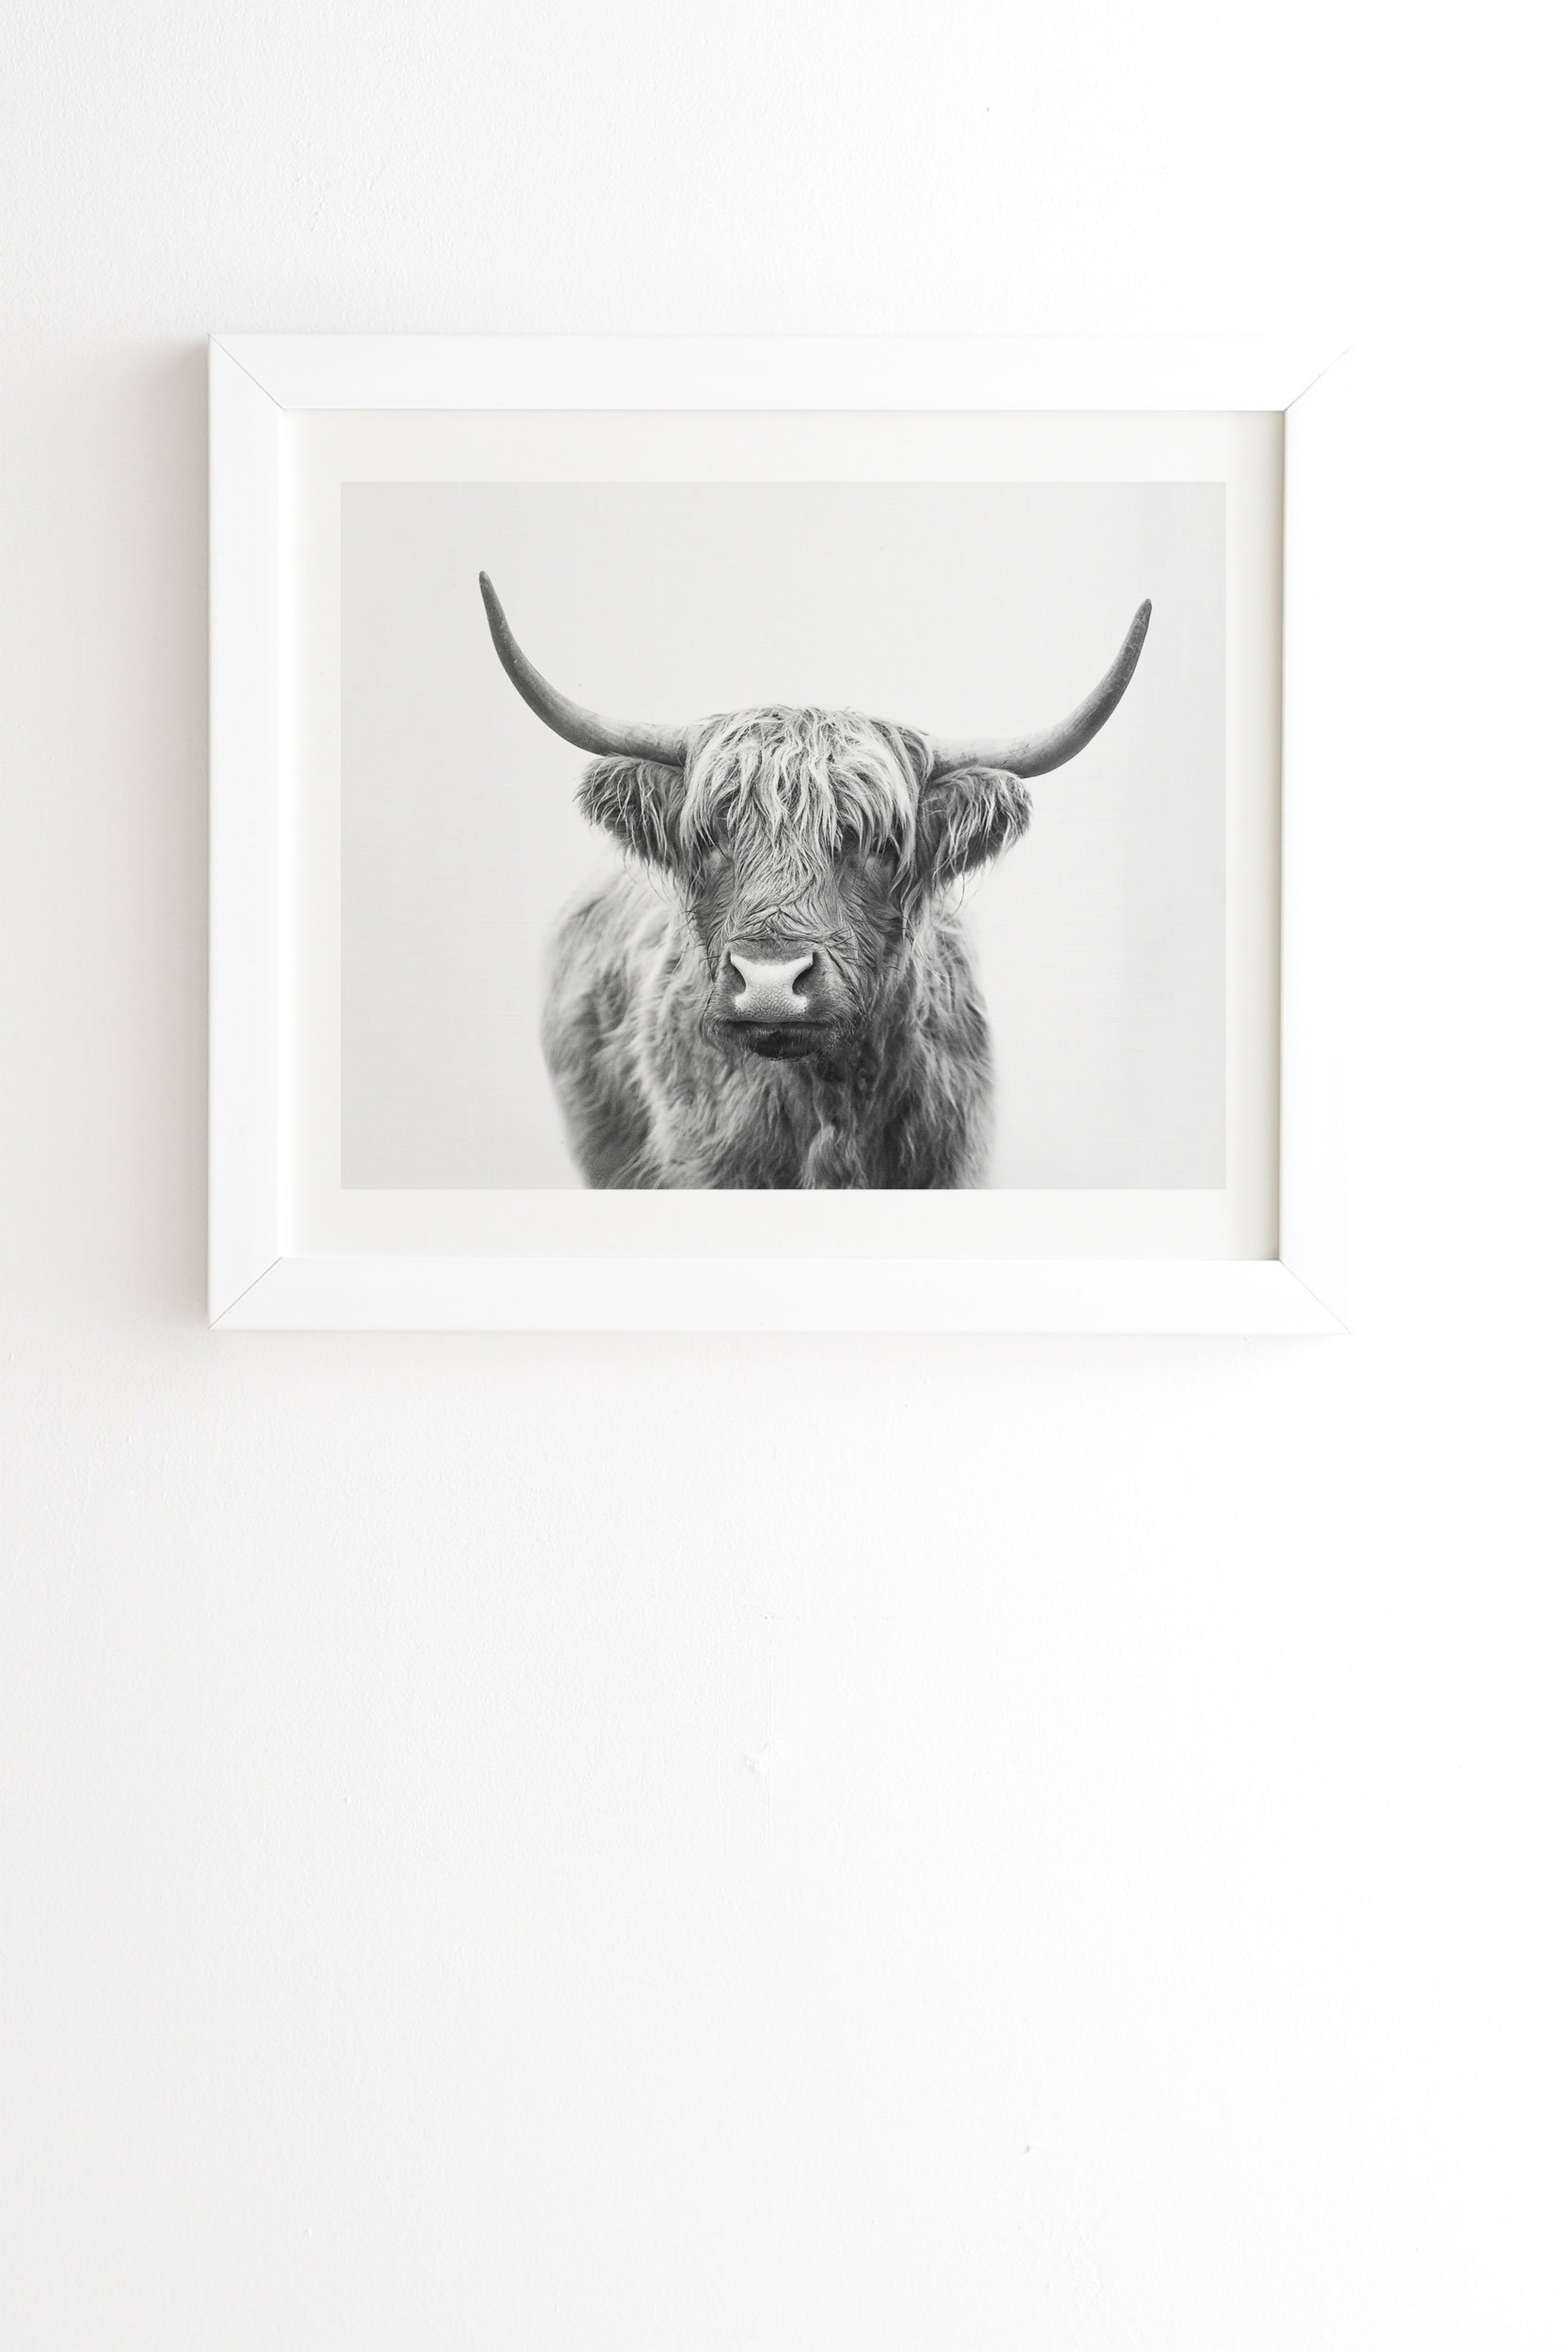 Highland Bull by Sisi and Seb - Framed Wall Art Basic White 8" x 9.5" - Wander Print Co.